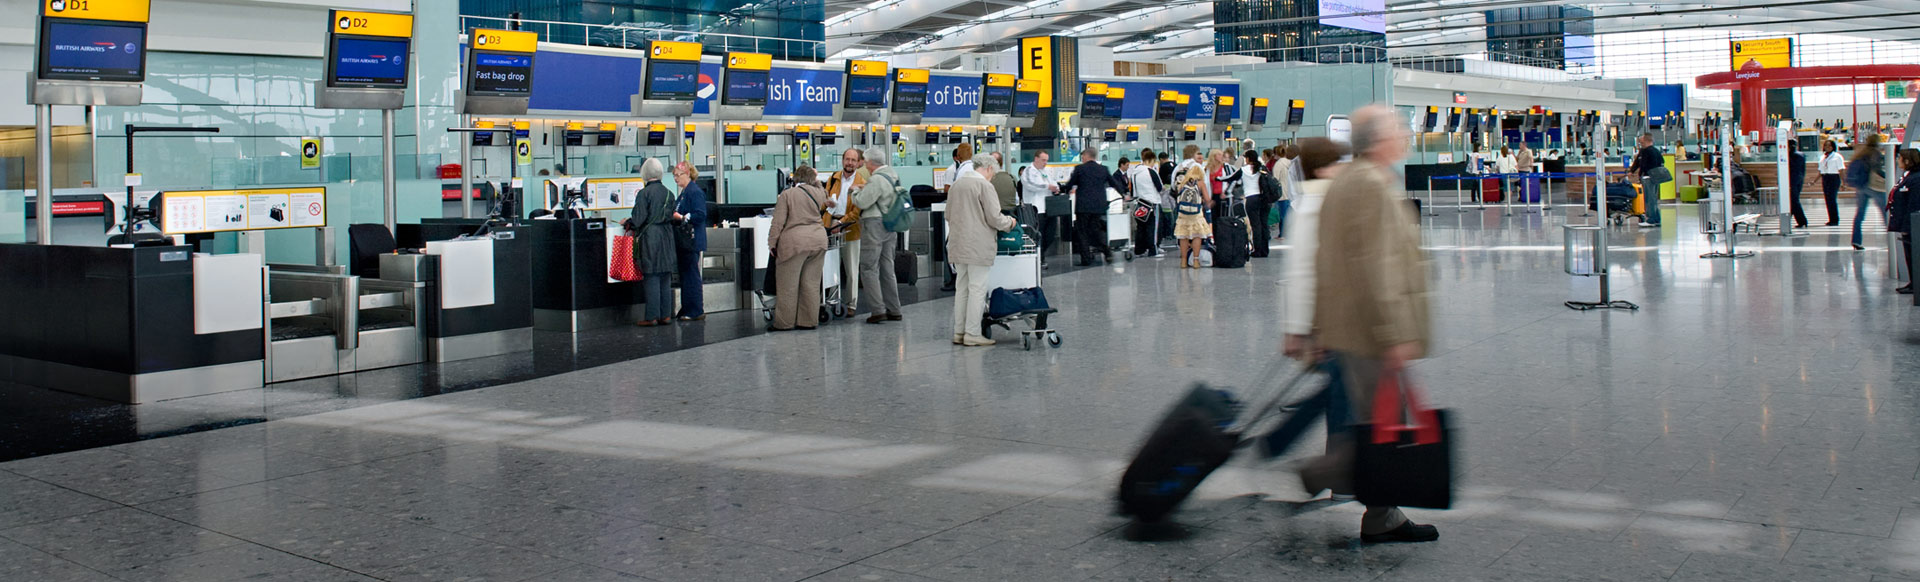 Personnes s'enregistrant à l'aéroport de Londres Heathrow